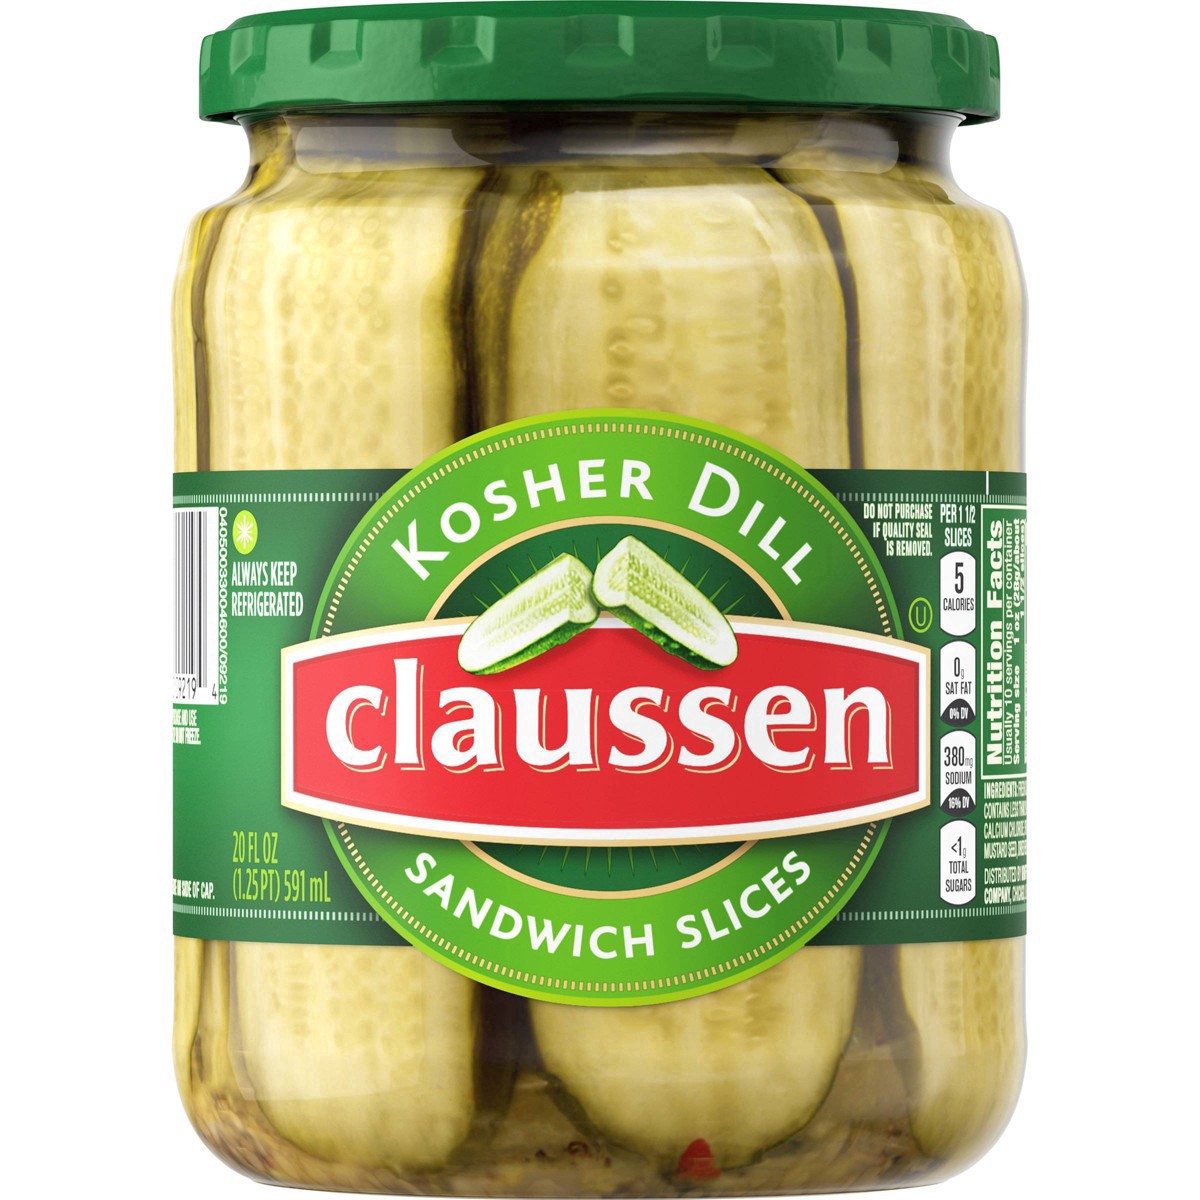 slide 103 of 144, Claussen Kosher Dill Pickle Sandwich Slices, 20 fl. oz. Jar, 20 fl oz